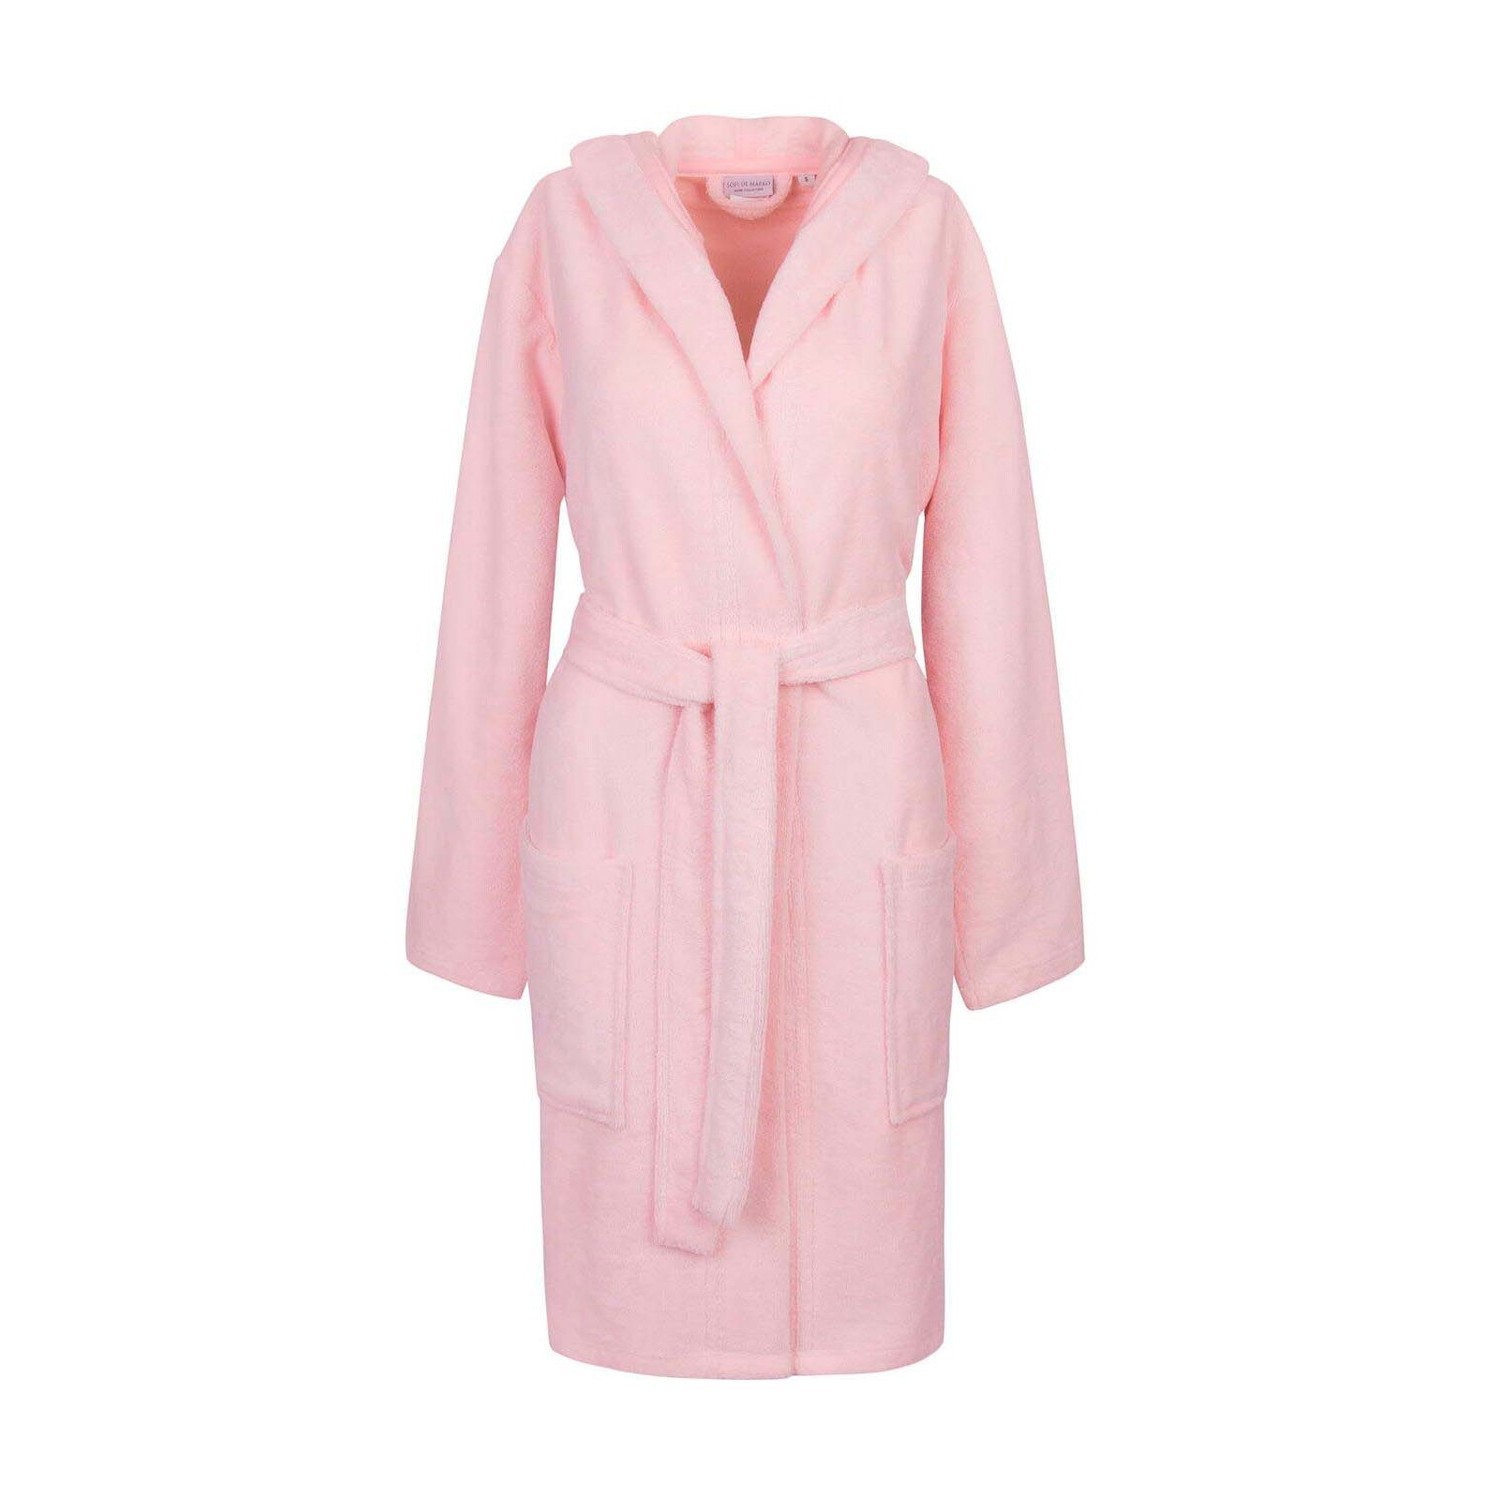 Банный халат Шанти цвет: розовый (L)